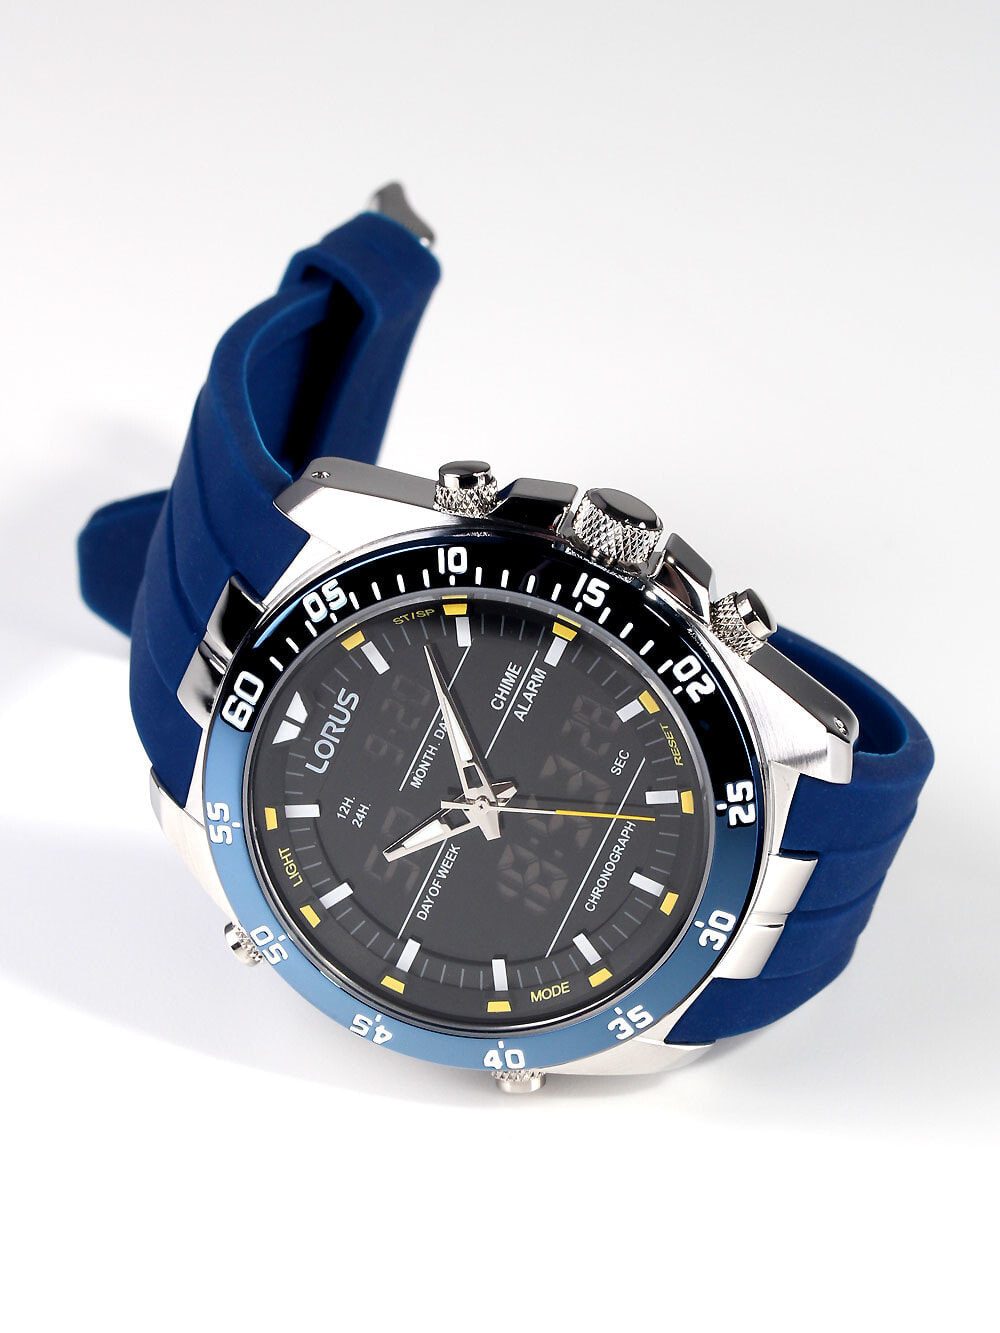 RW617AX9 с Chronograph наручные купить Мужские 6761219 100M недорого часы Analog-Digital 46mm — доставкой, Lorus Alarm силиконовым ремешком с синим